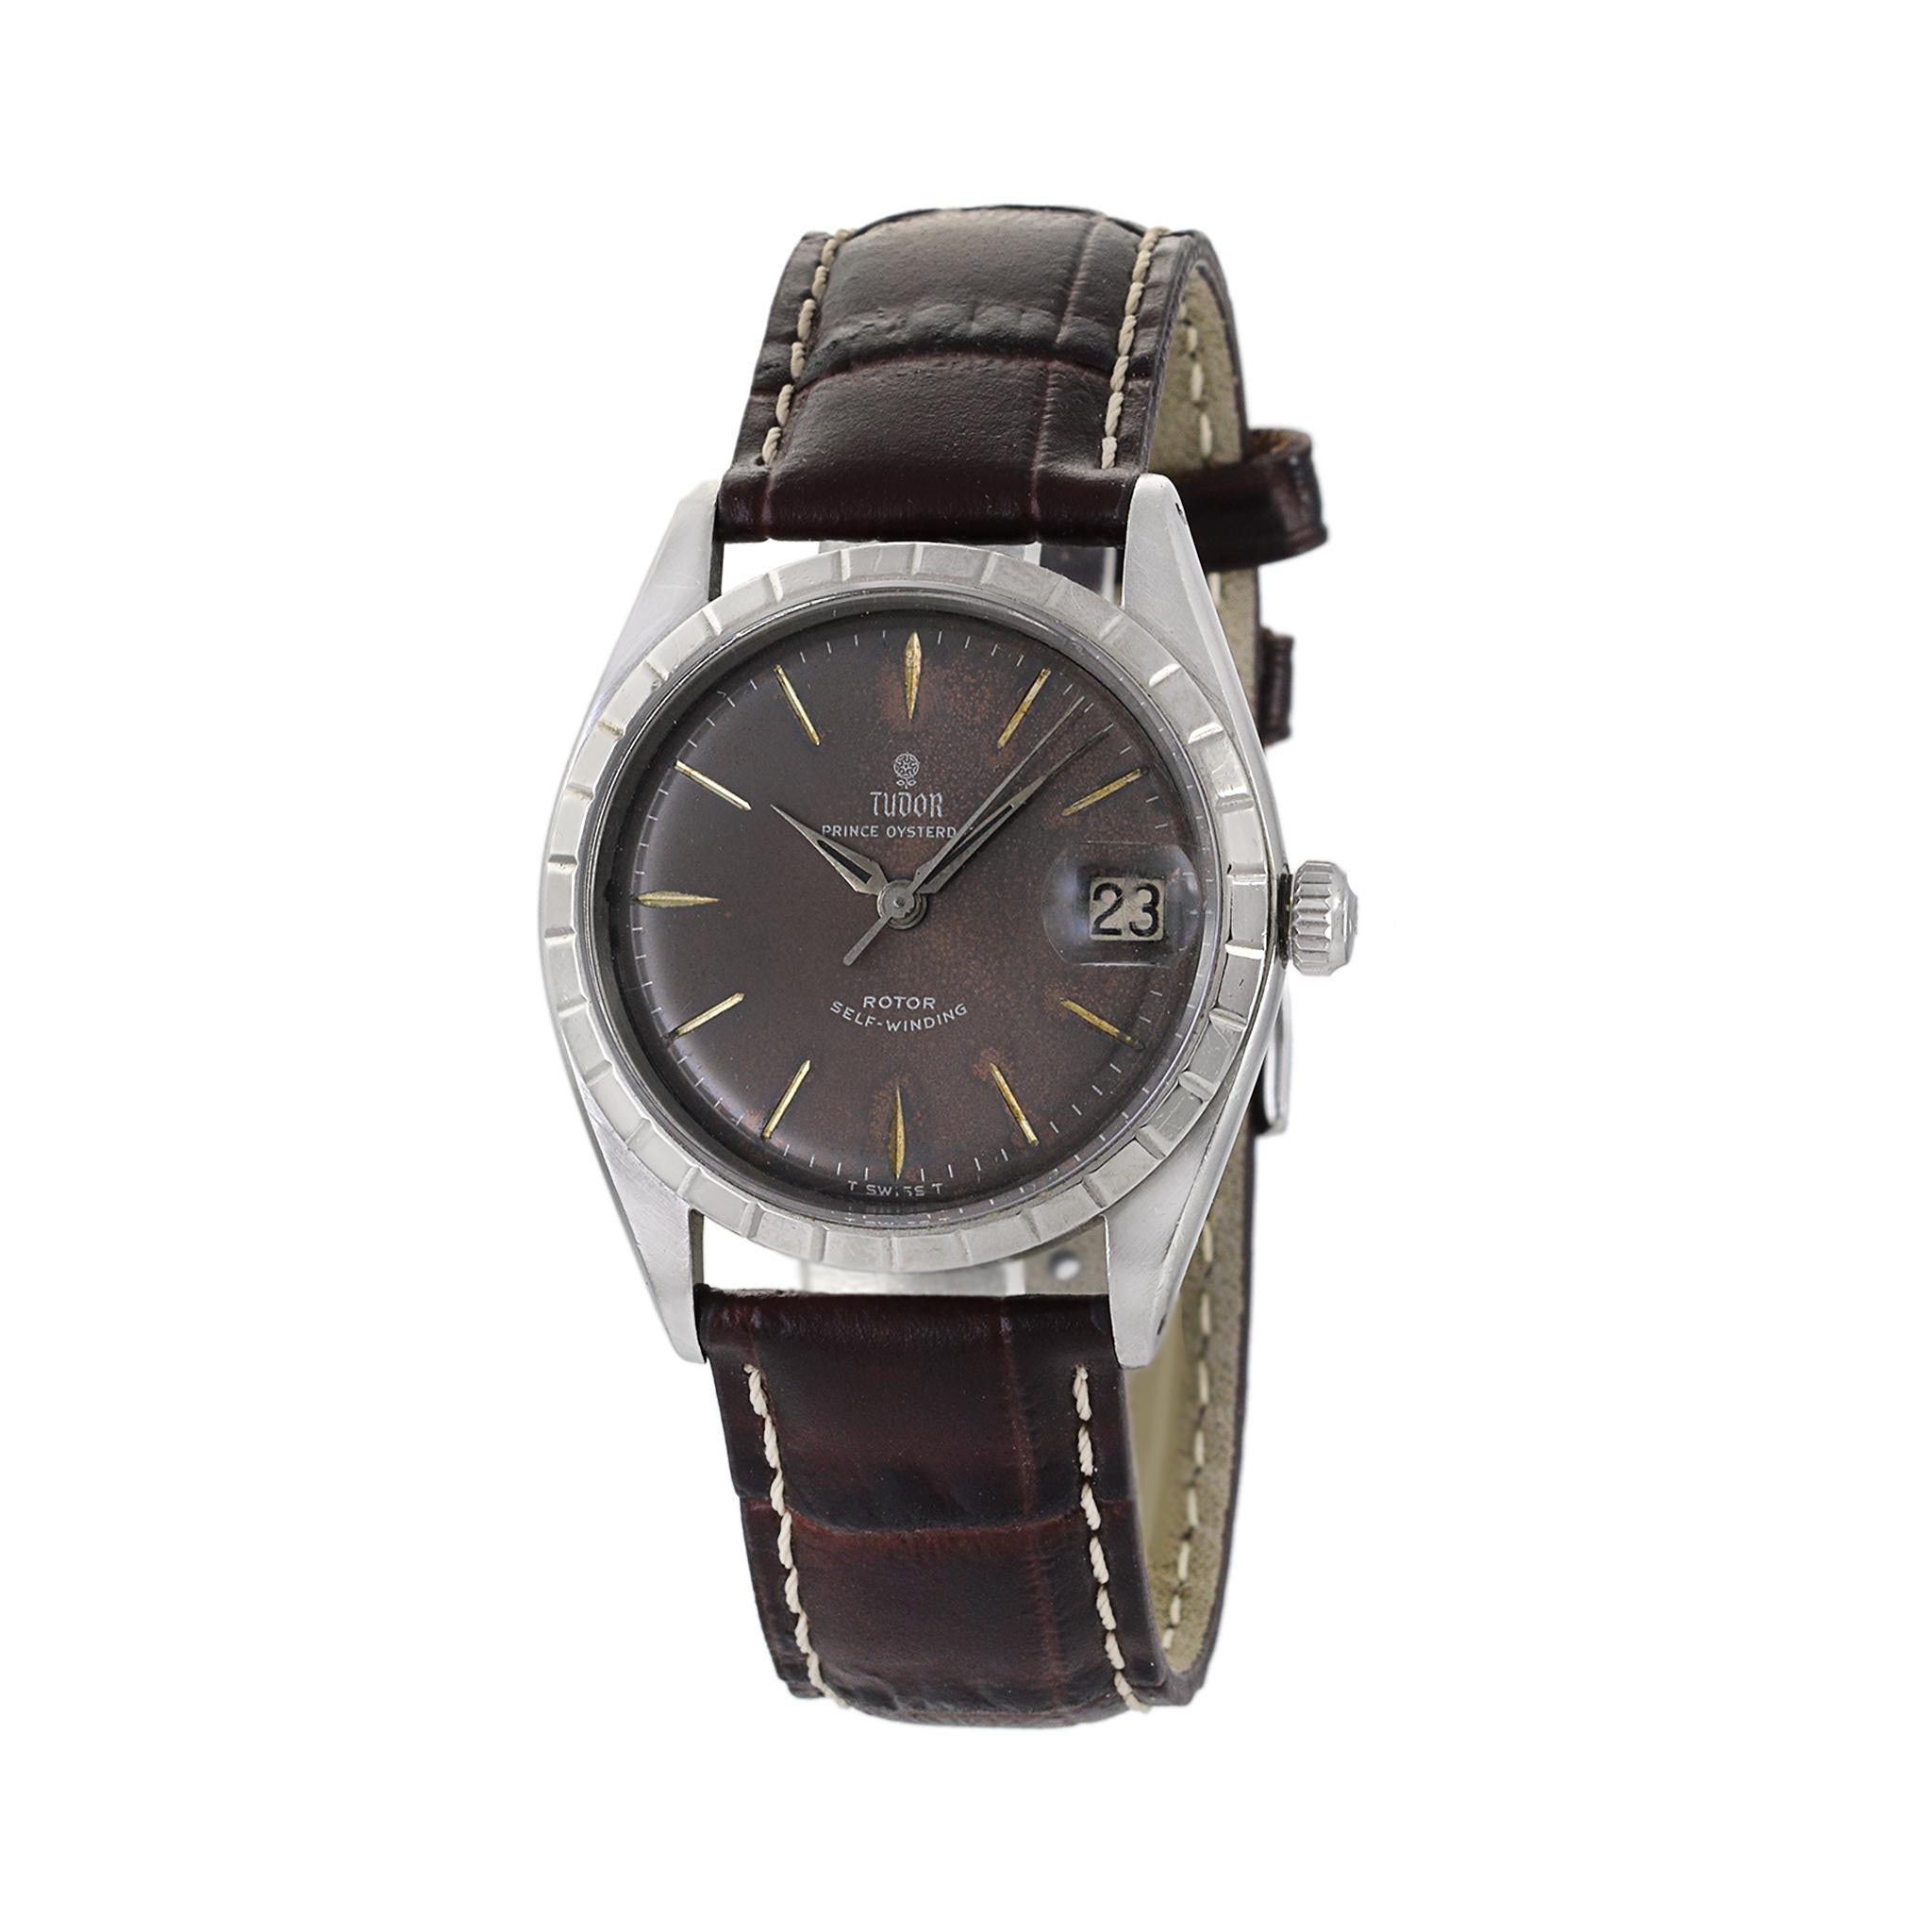 Die Rolex Tudor Prince Oysterdate Reference 7966 aus dem Jahr 1964 ist ein zeitloser Schatz, der Charme und Eleganz ausstrahlt. Das klassische 34-mm-Edelstahlgehäuse dieser Uhr verfügt über eine drehbare Lünette, die dem Design einen Hauch von